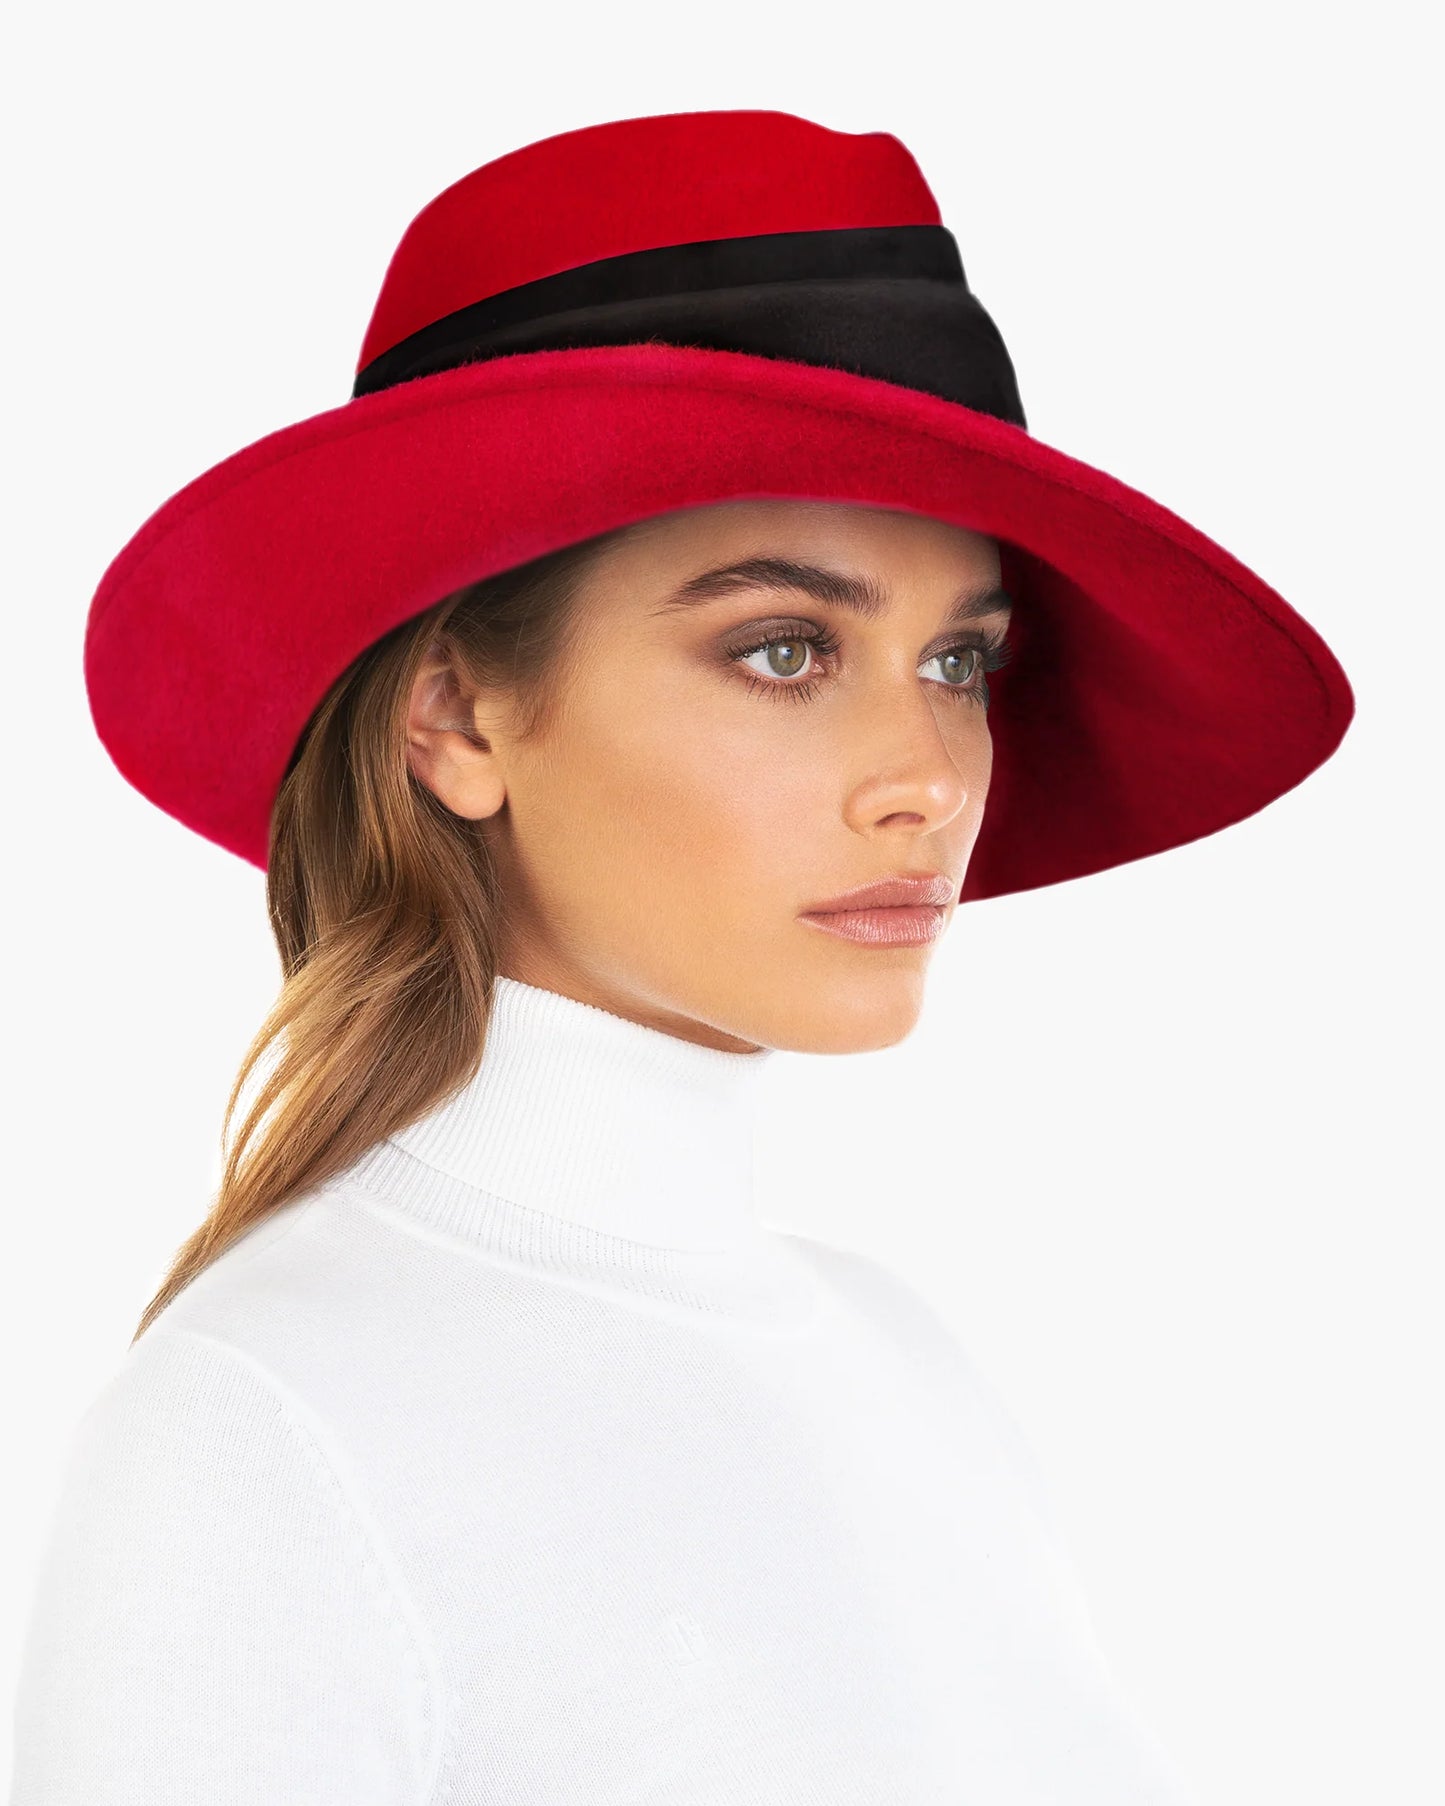 L’ Avenue Wool Felt Fedora Hat